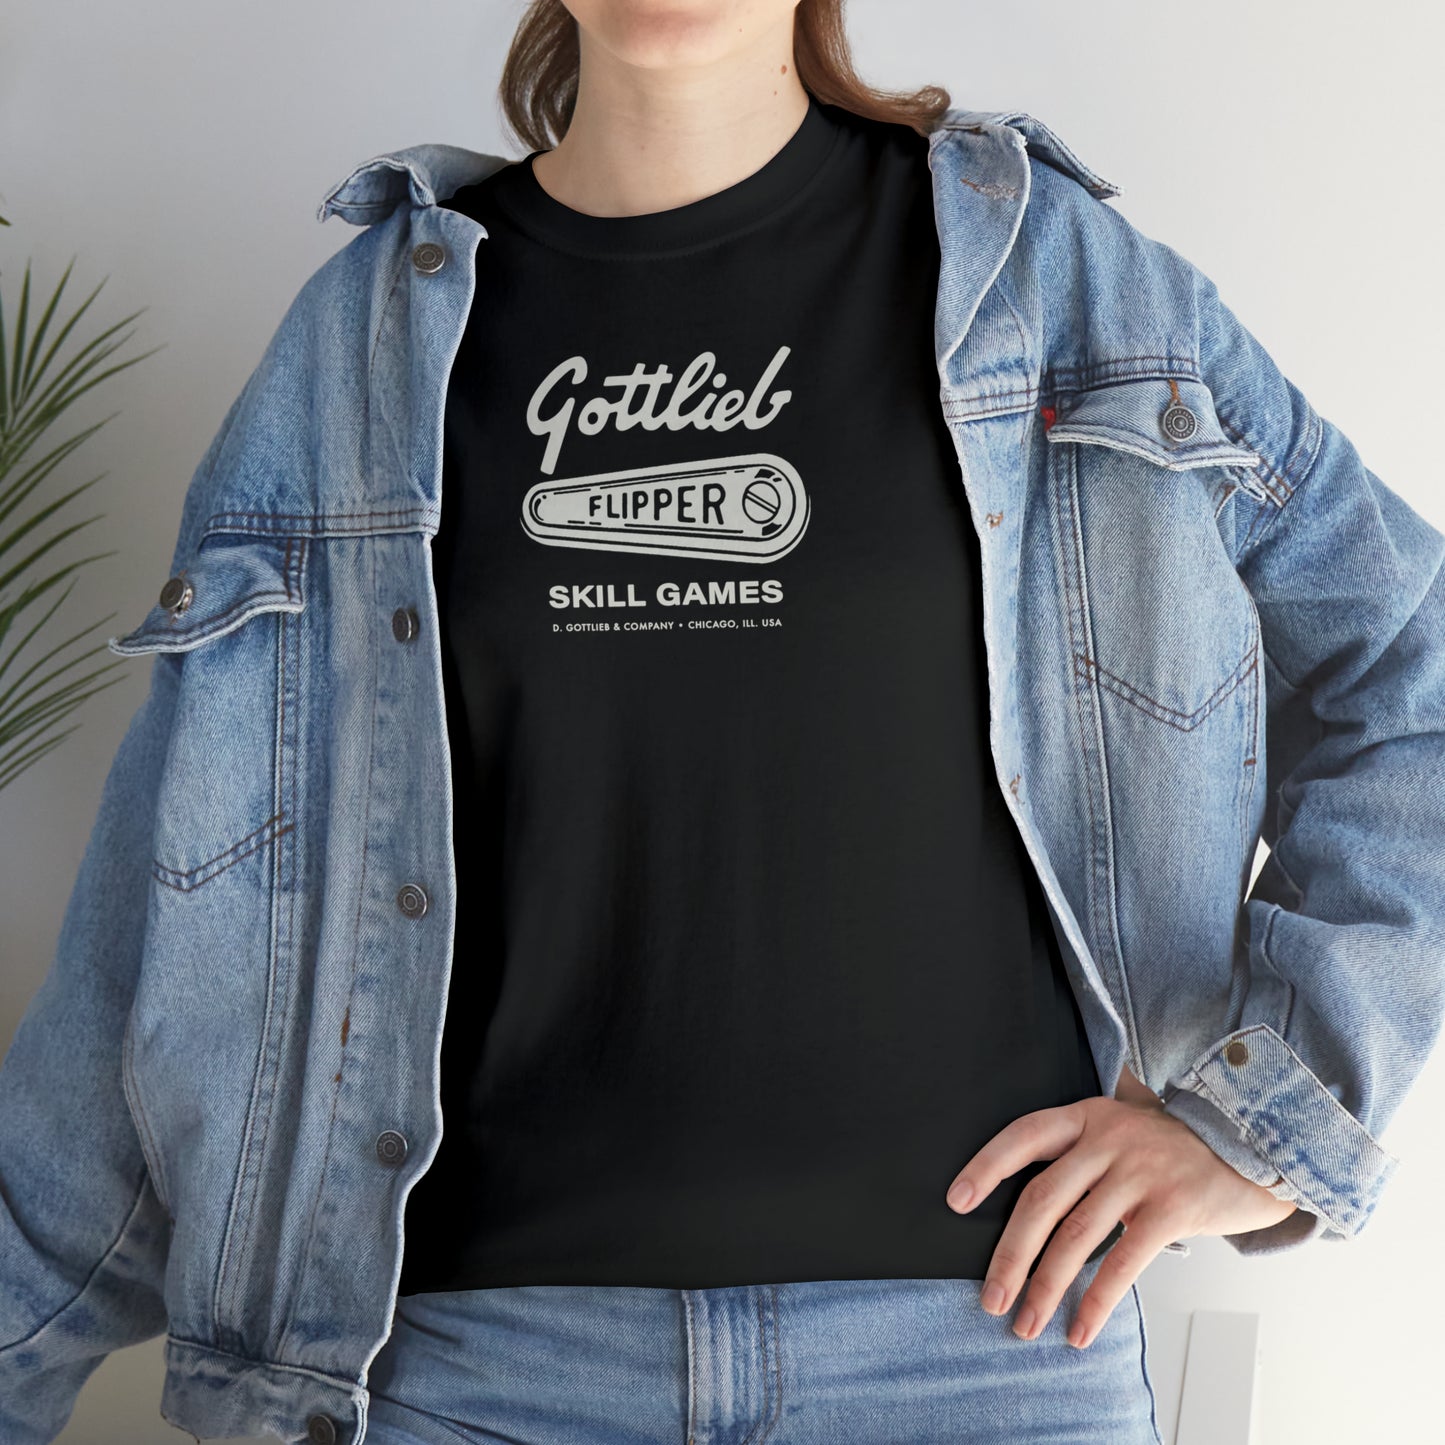 Gottlieb T-Shirt